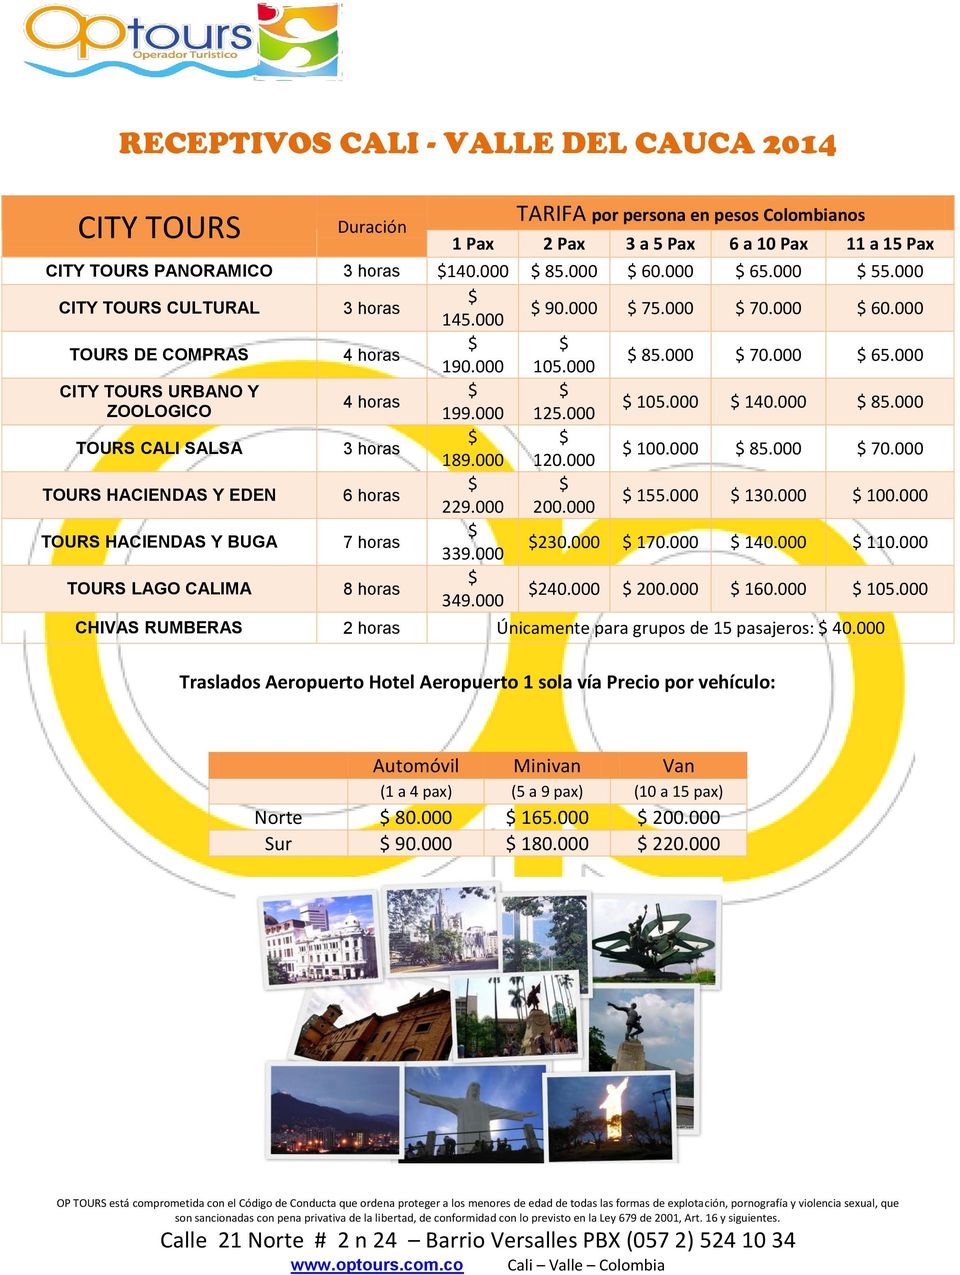 000 CITY TOURS URBANO Y $ $ 4 horas $ 105.000 $ 140.000 $ 85.000 ZOOLOGICO 199.000 125.000 $ $ TOURS CALI SALSA 3 horas $ 100.000 $ 85.000 $ 70.000 189.000 120.